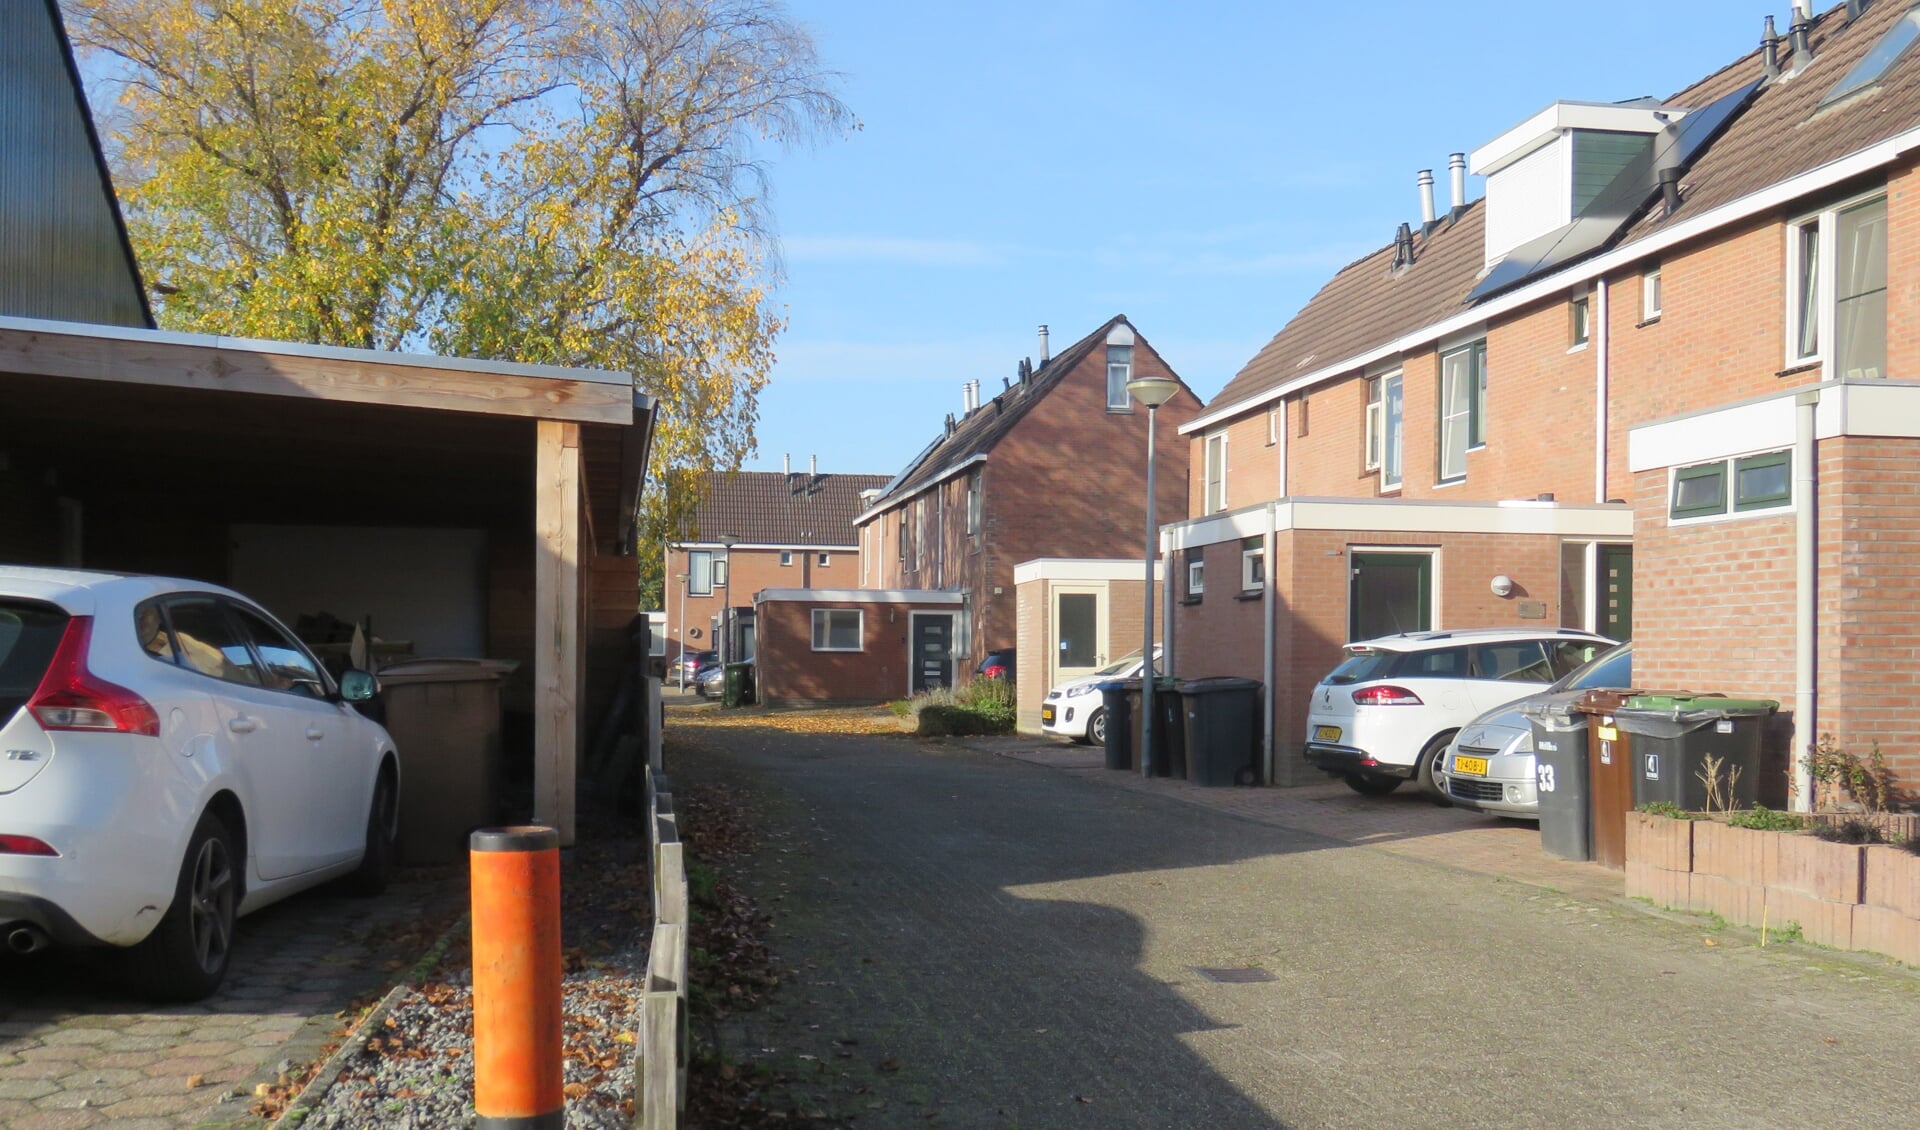 De Boswijk in Sappemeer; de eerste wijk die aan de beurt is.